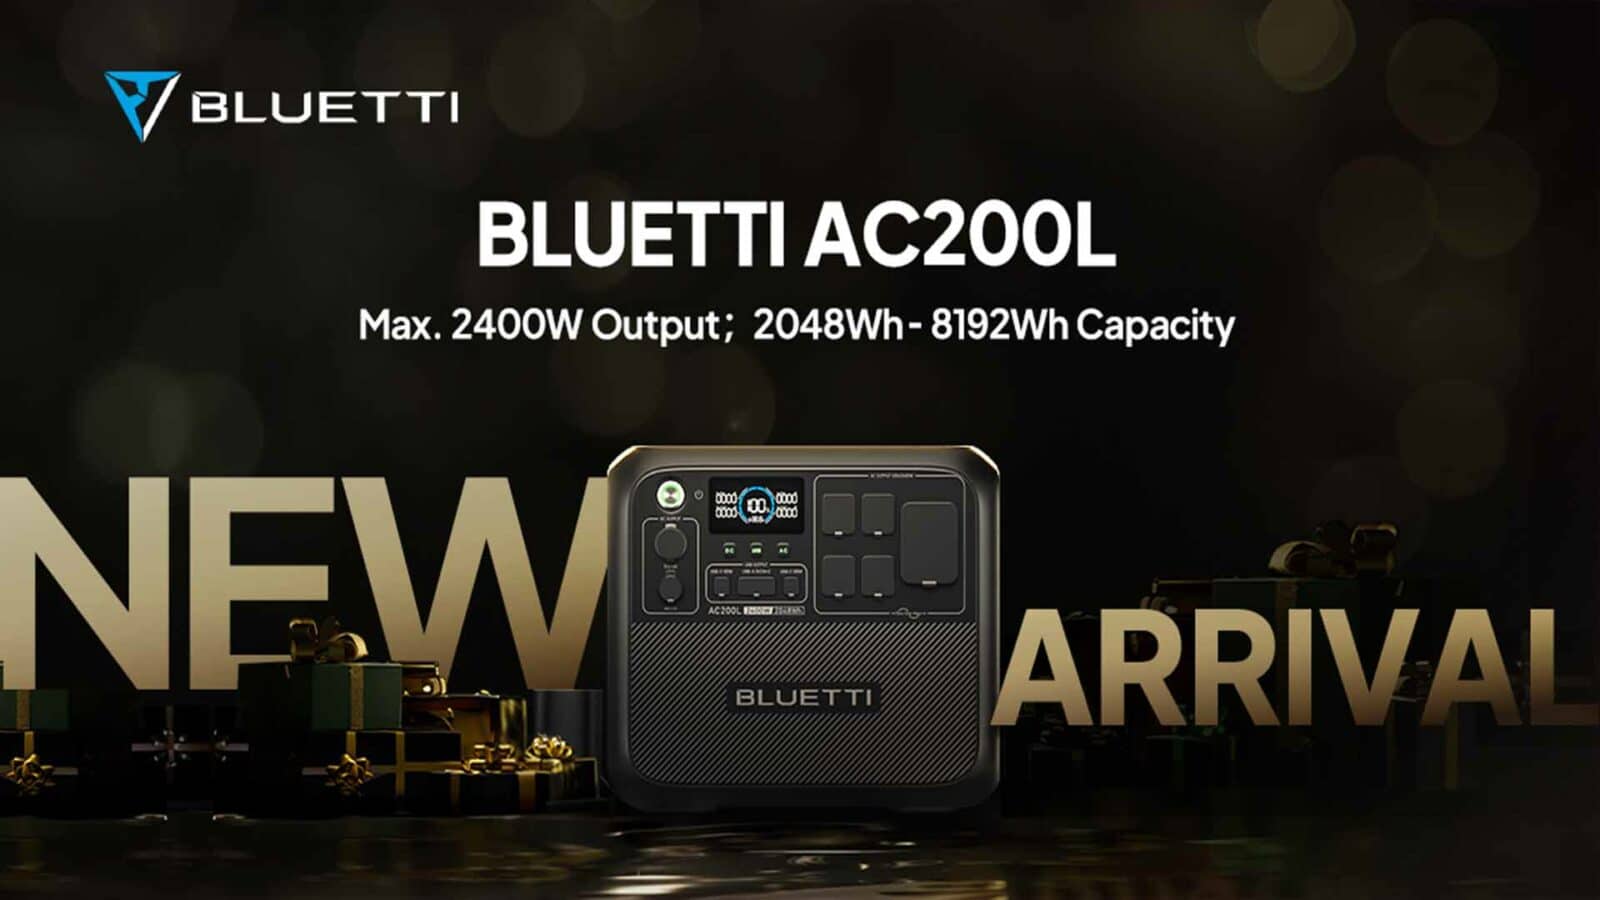 Ha llegado un nuevo modelo del bluetti ac200l con una potencia máxima de 2400w y una capacidad de 8192wh.